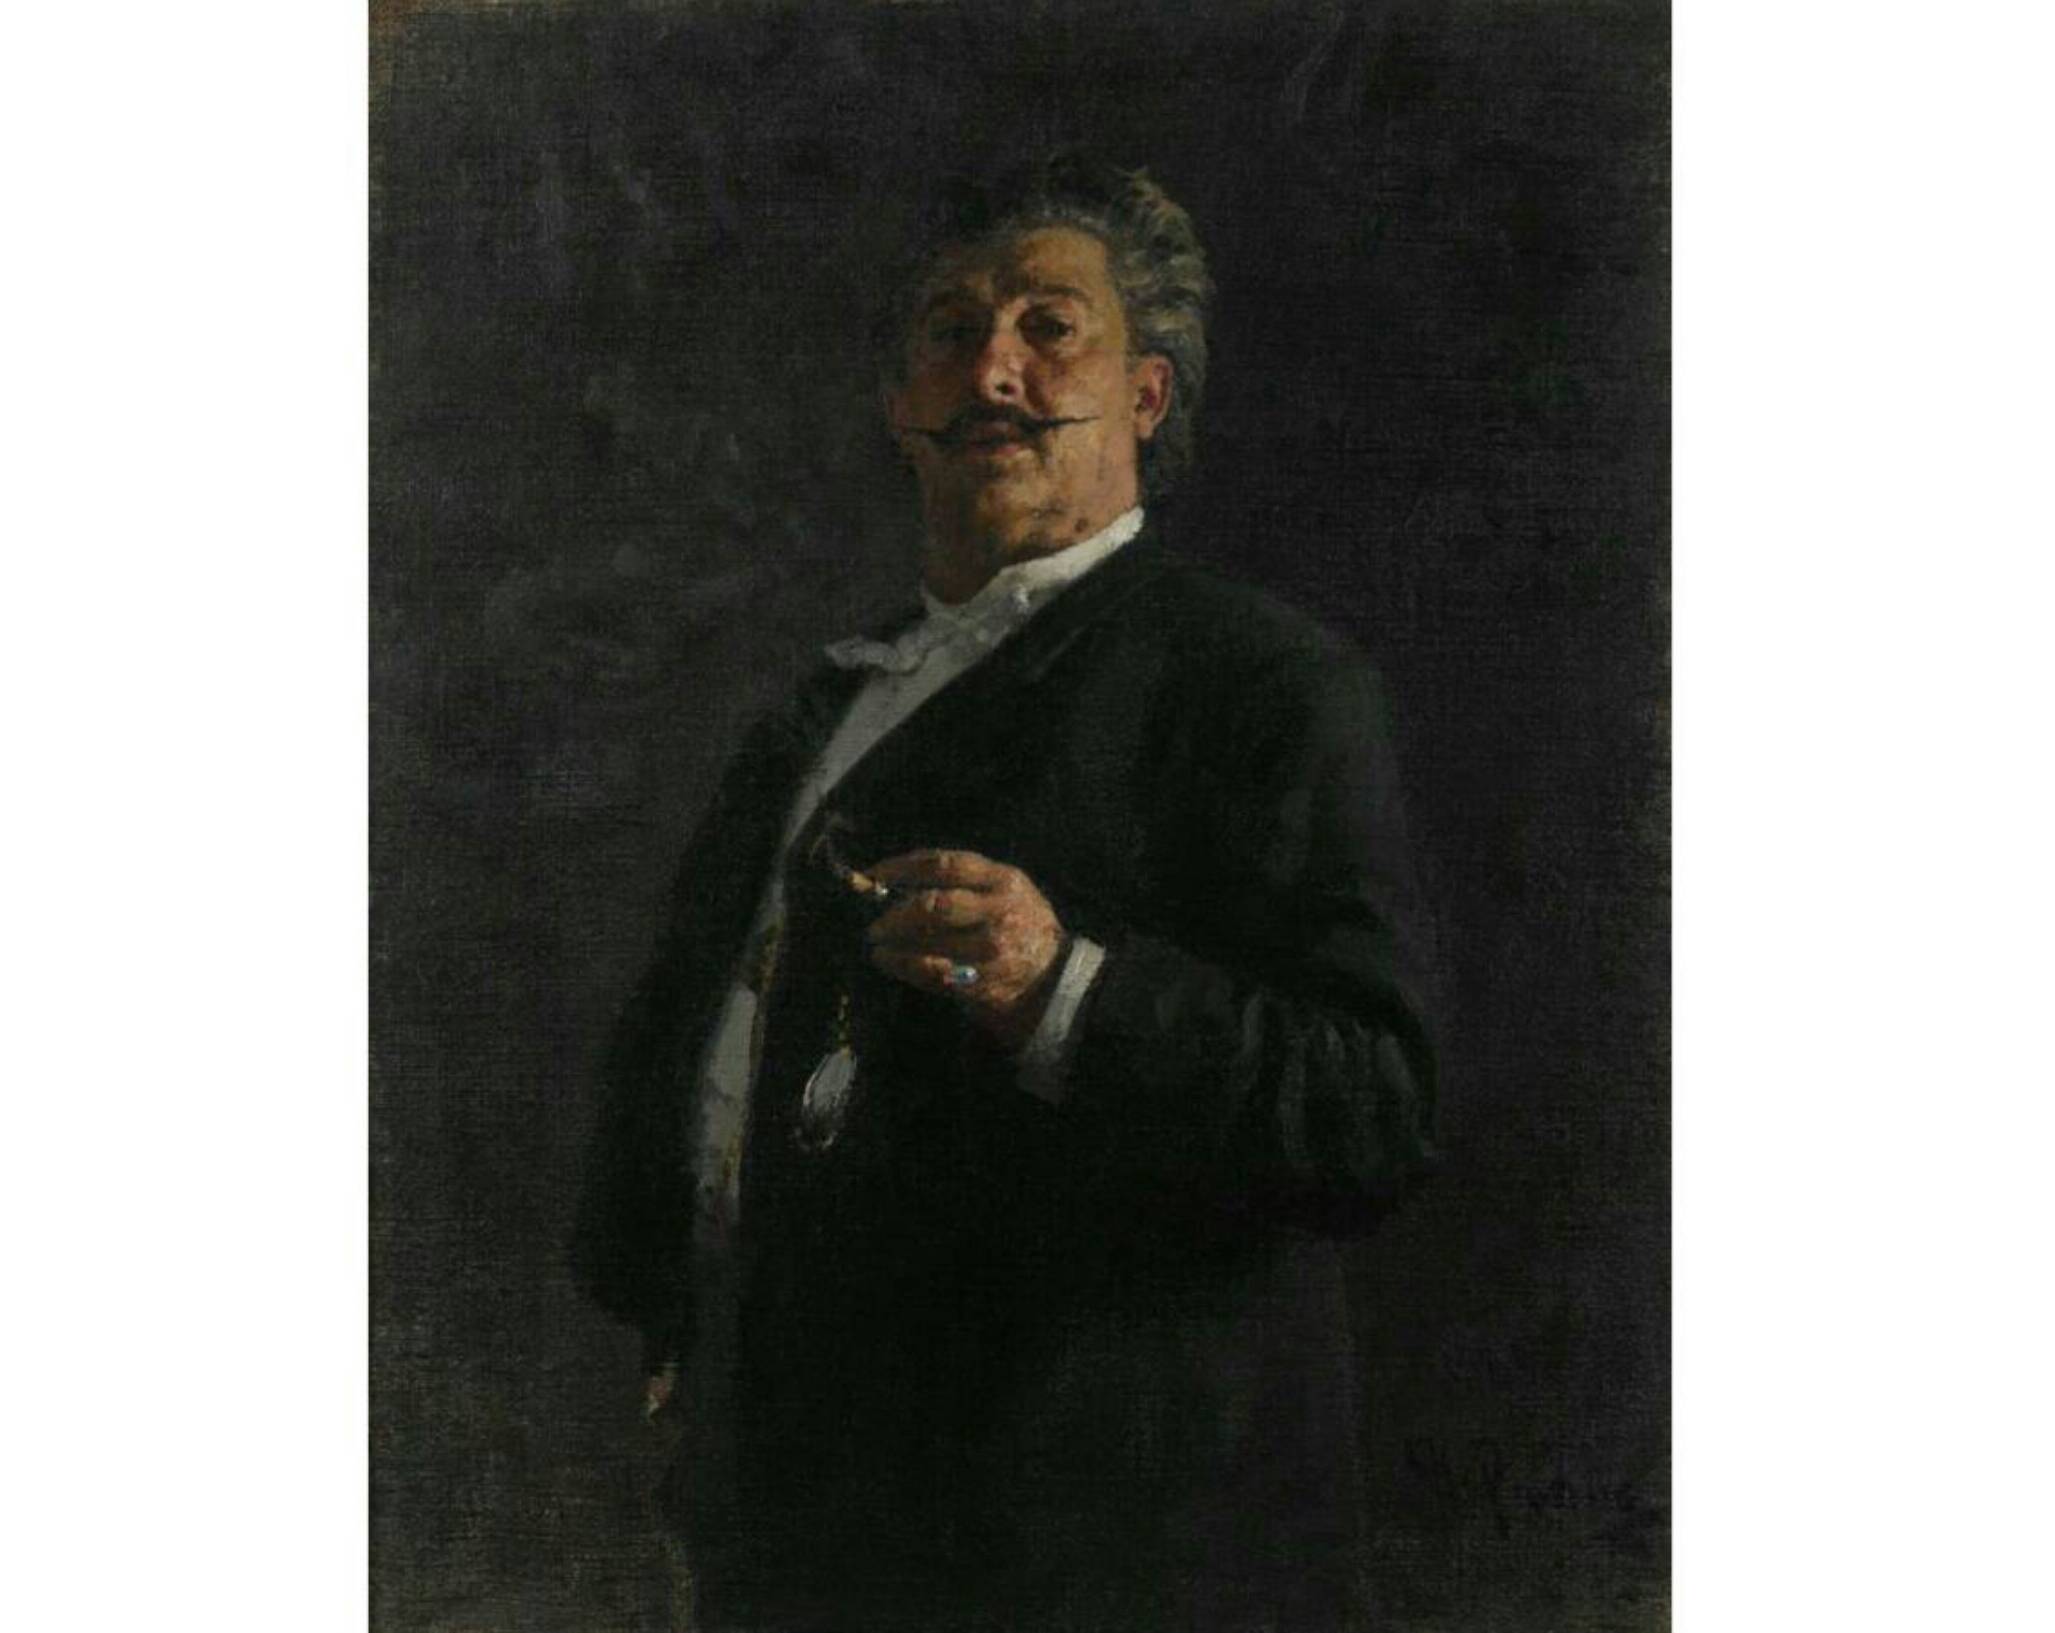 И.Е. Репин «Портрет М.О. Микешина», 1888 год. Из собрания Третьяковской галереи